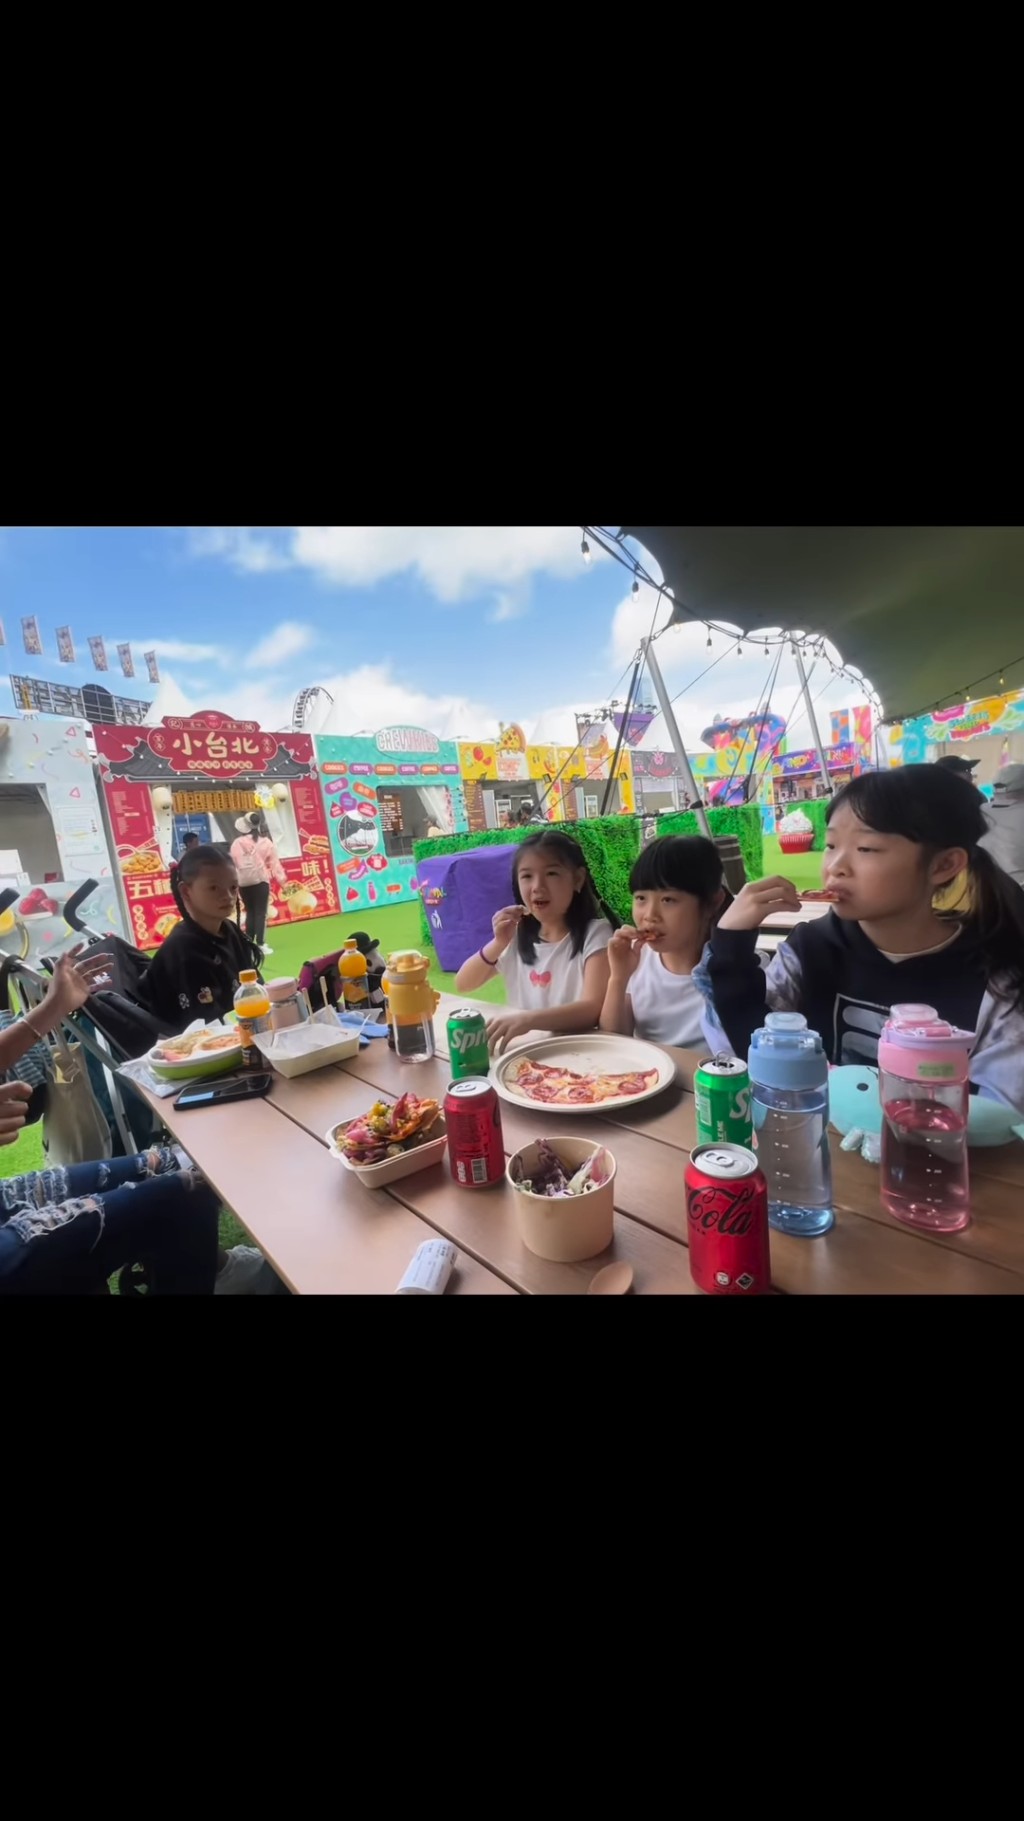 锺丽淇与女儿及朋友们一起吃pizza医肚。